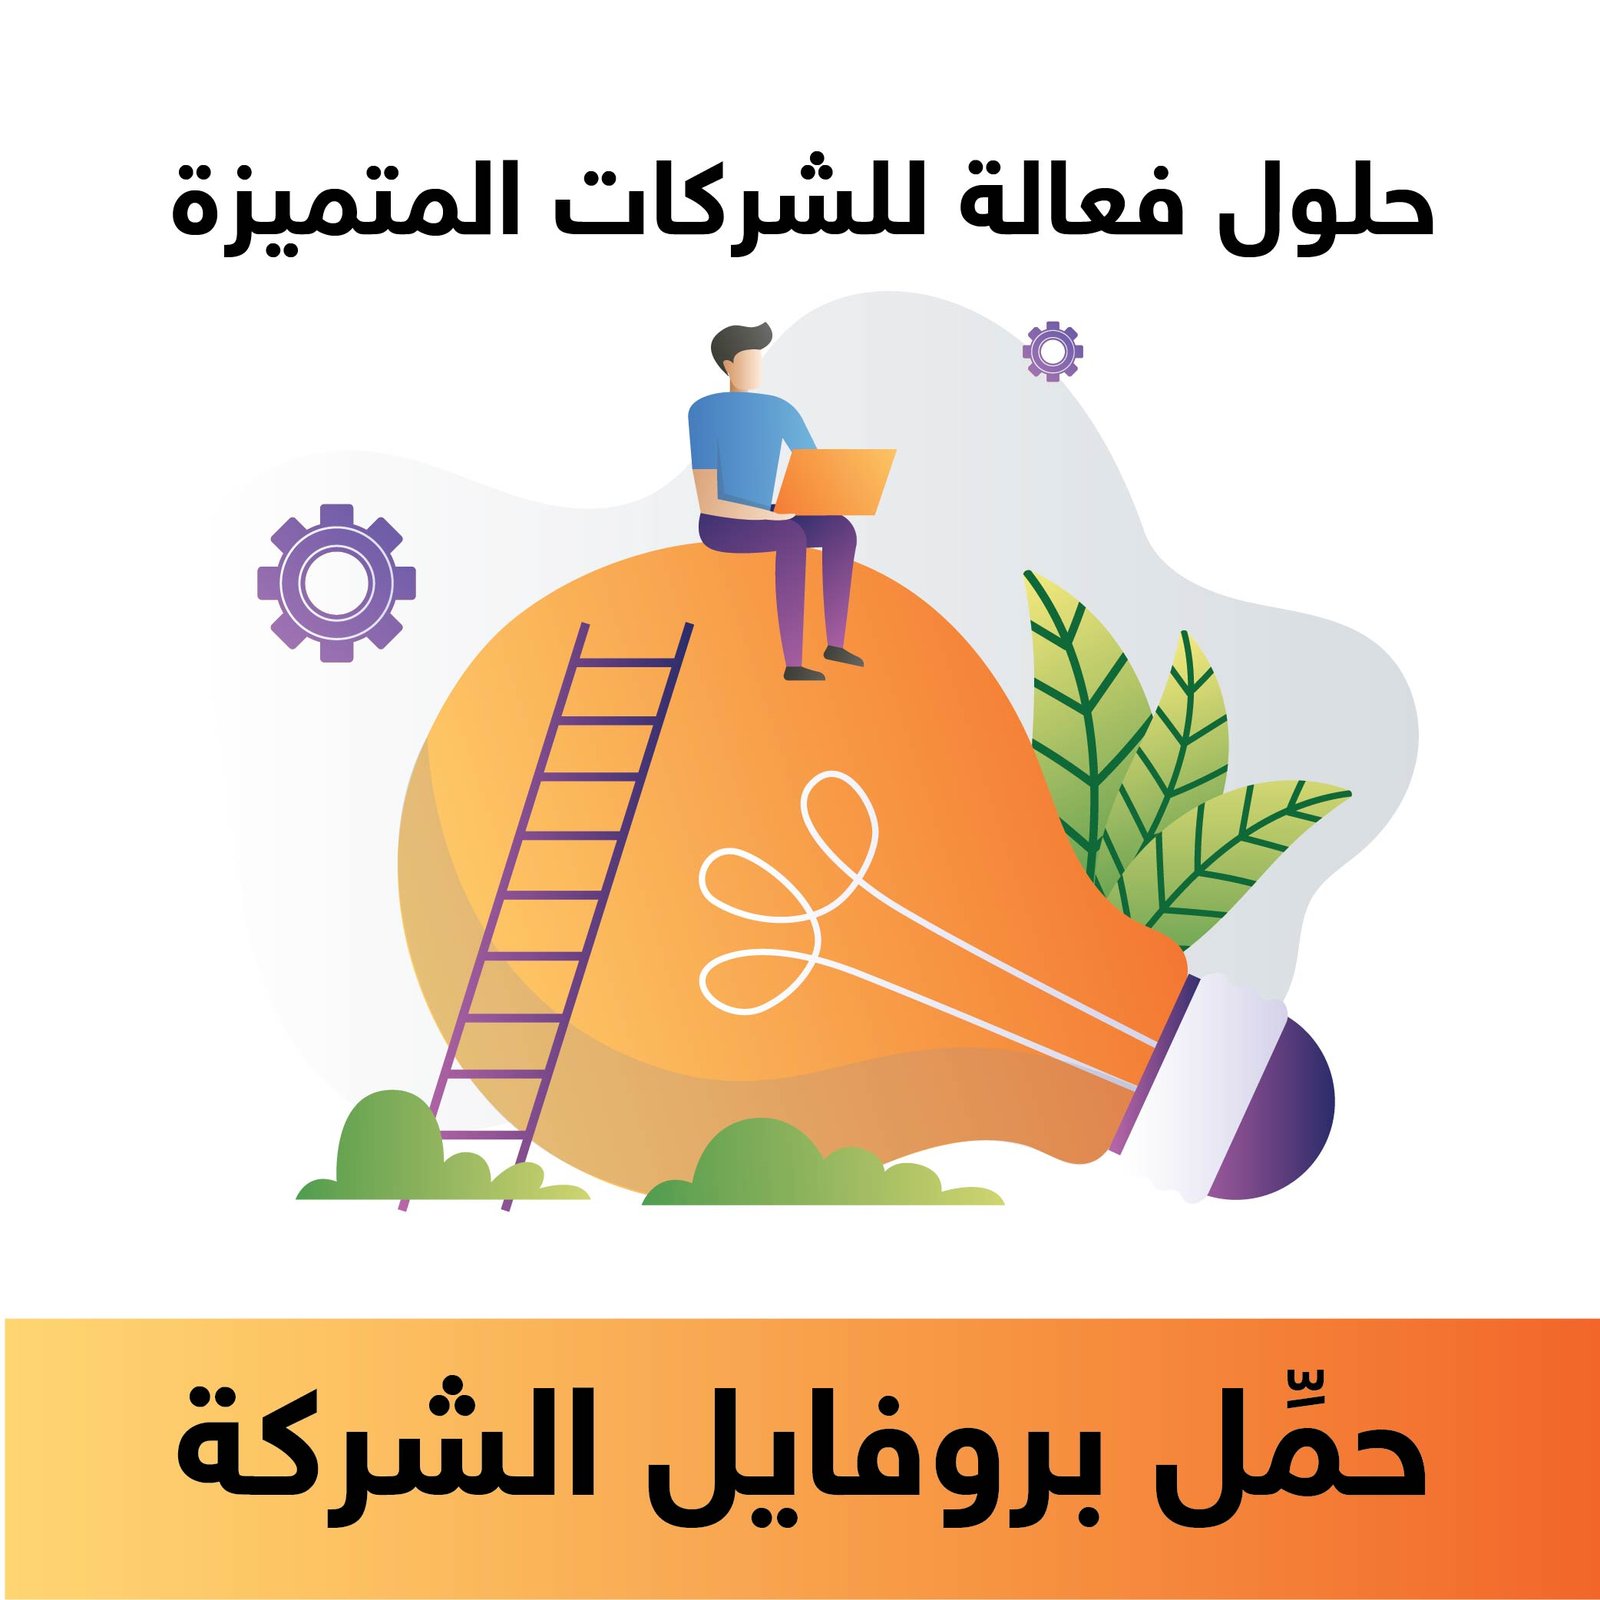 Download Company Profile Arabic